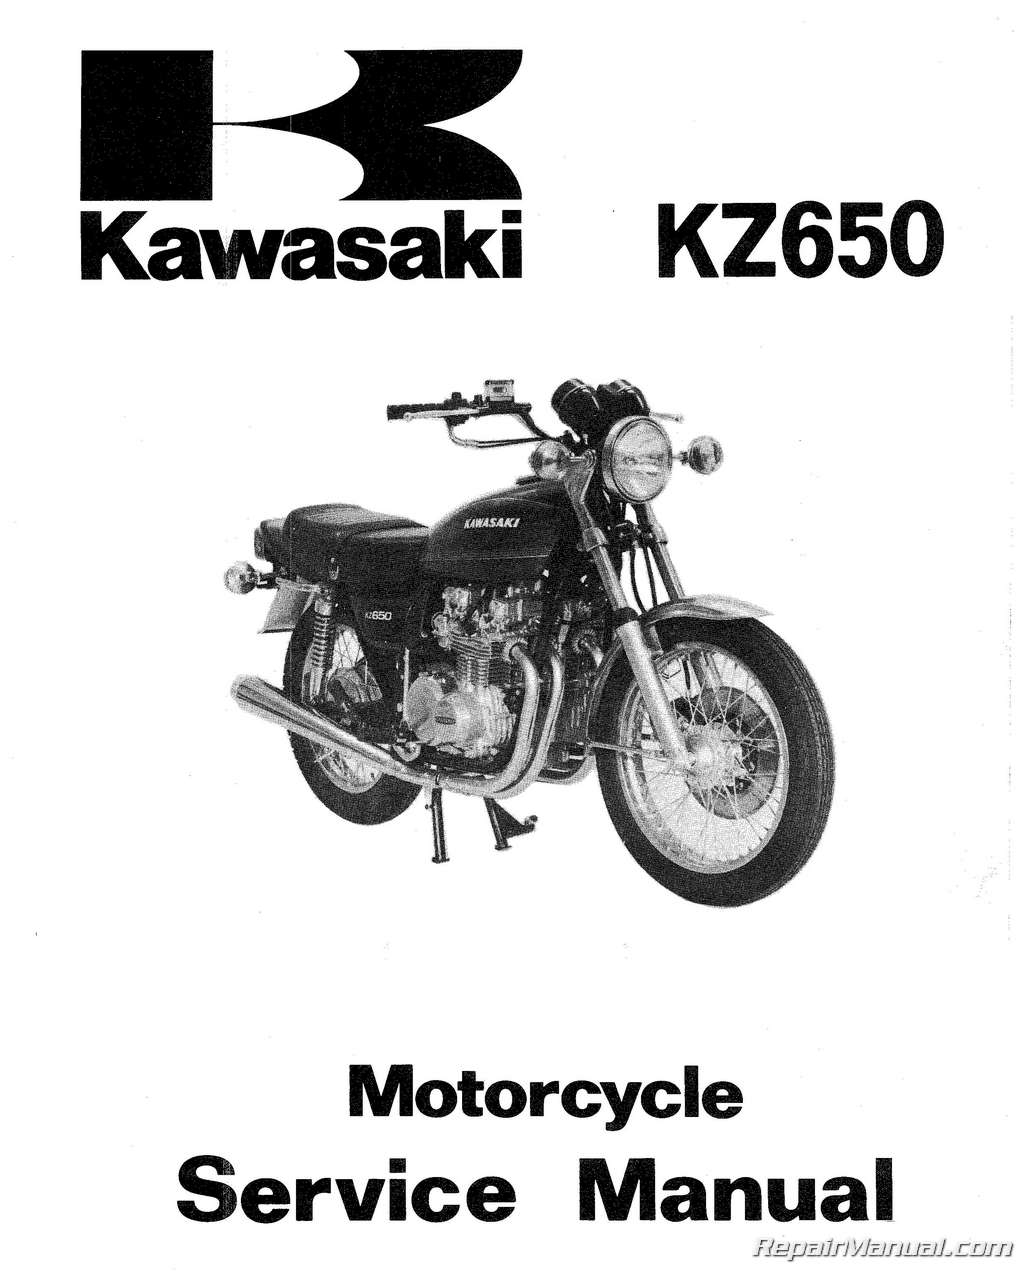 Z650 kawasaki review